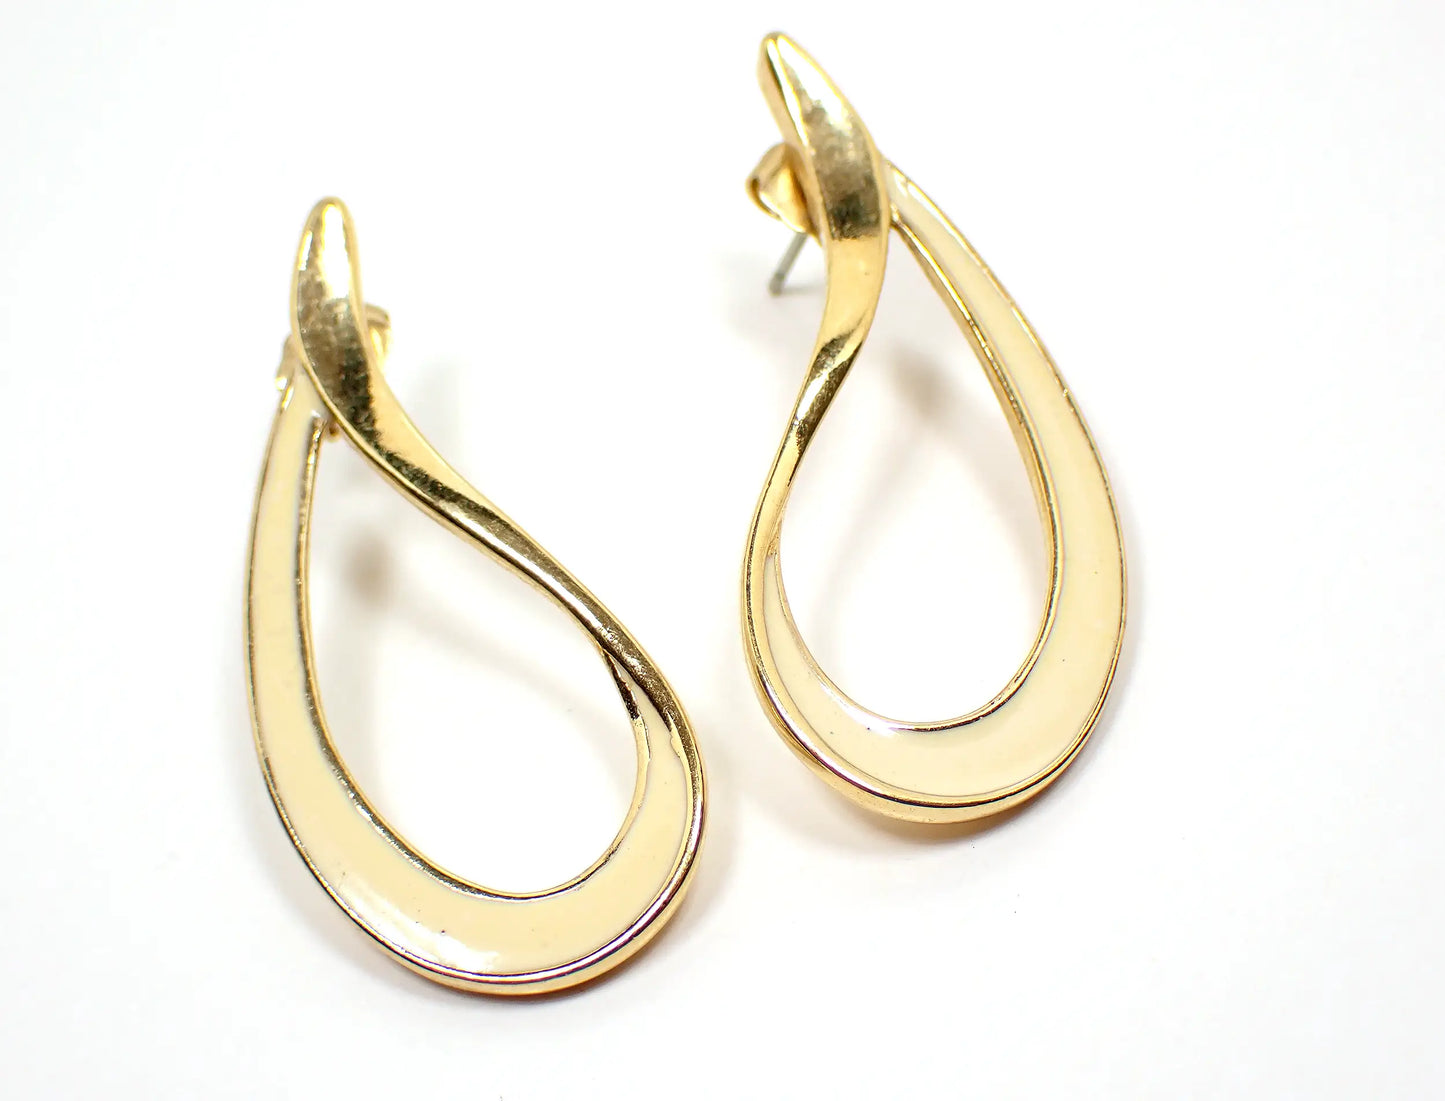 Avon Off White Enameled Retro Vintage Teardrop Earrings, Gold Tone Post Pierced